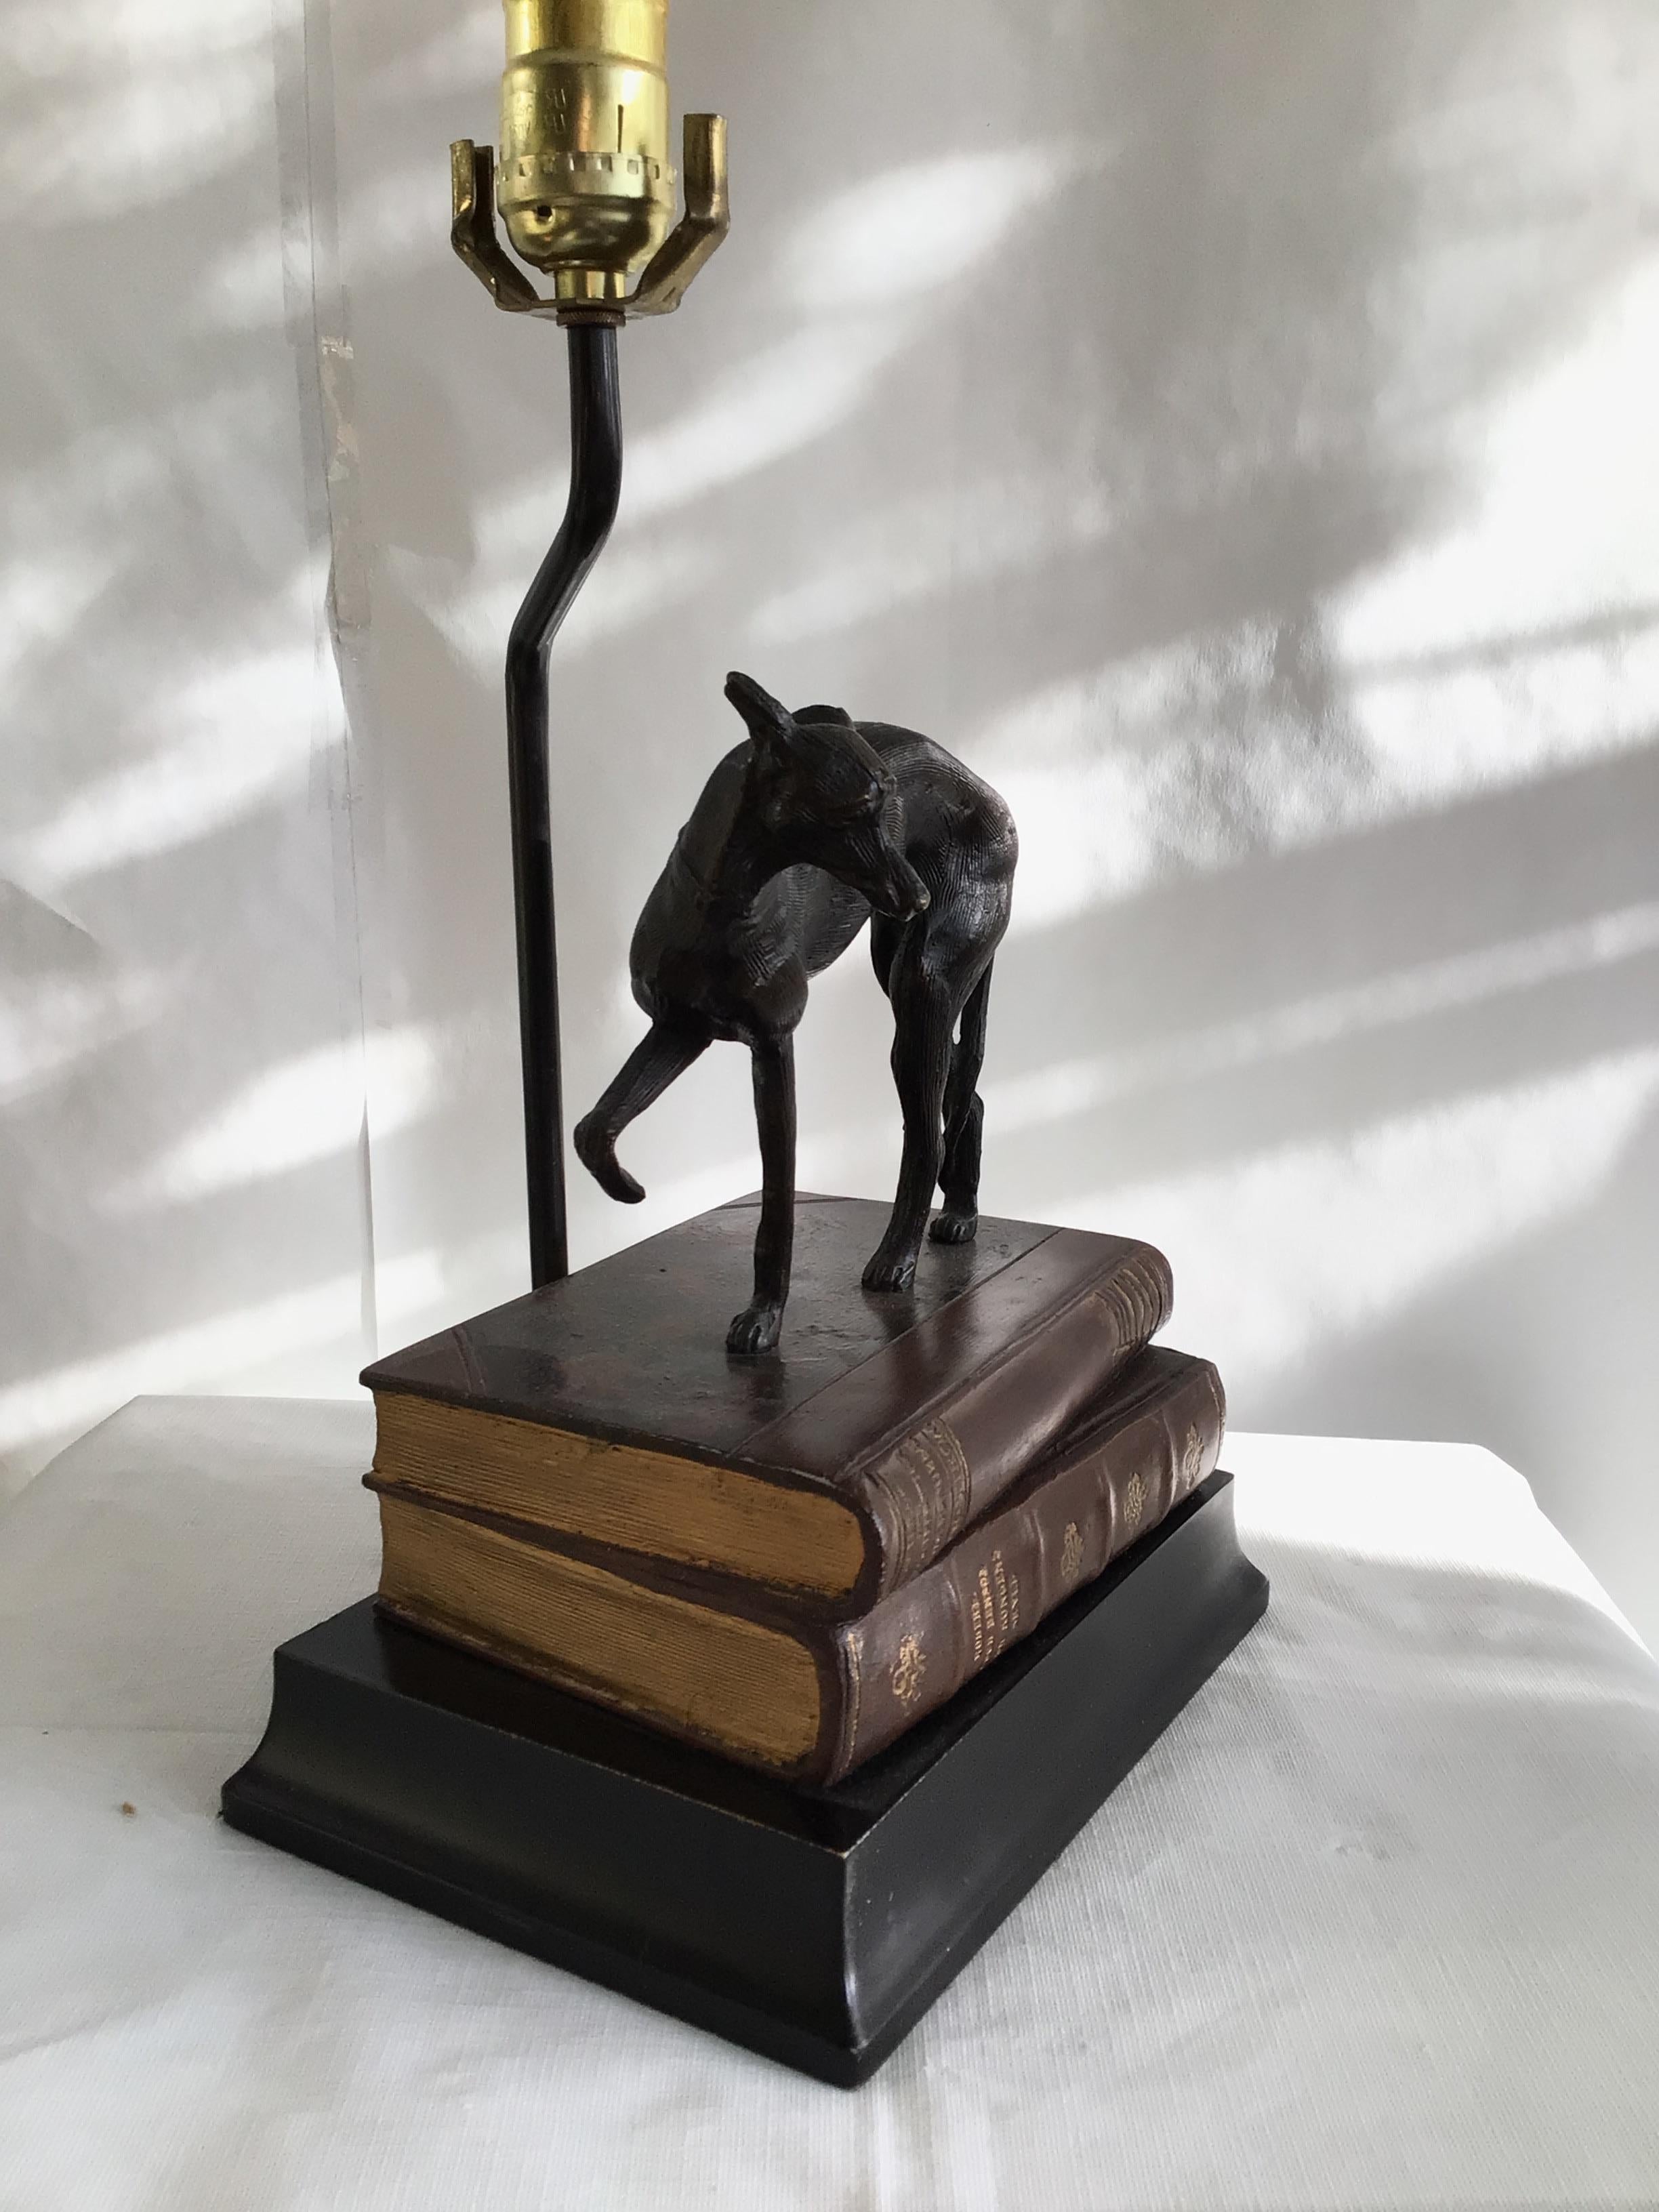 1970er Metall Whippet / Windhund Hund auf Bücherstapel stehend Lampe auf Holzsockel (bemalt)
Höhe: 15